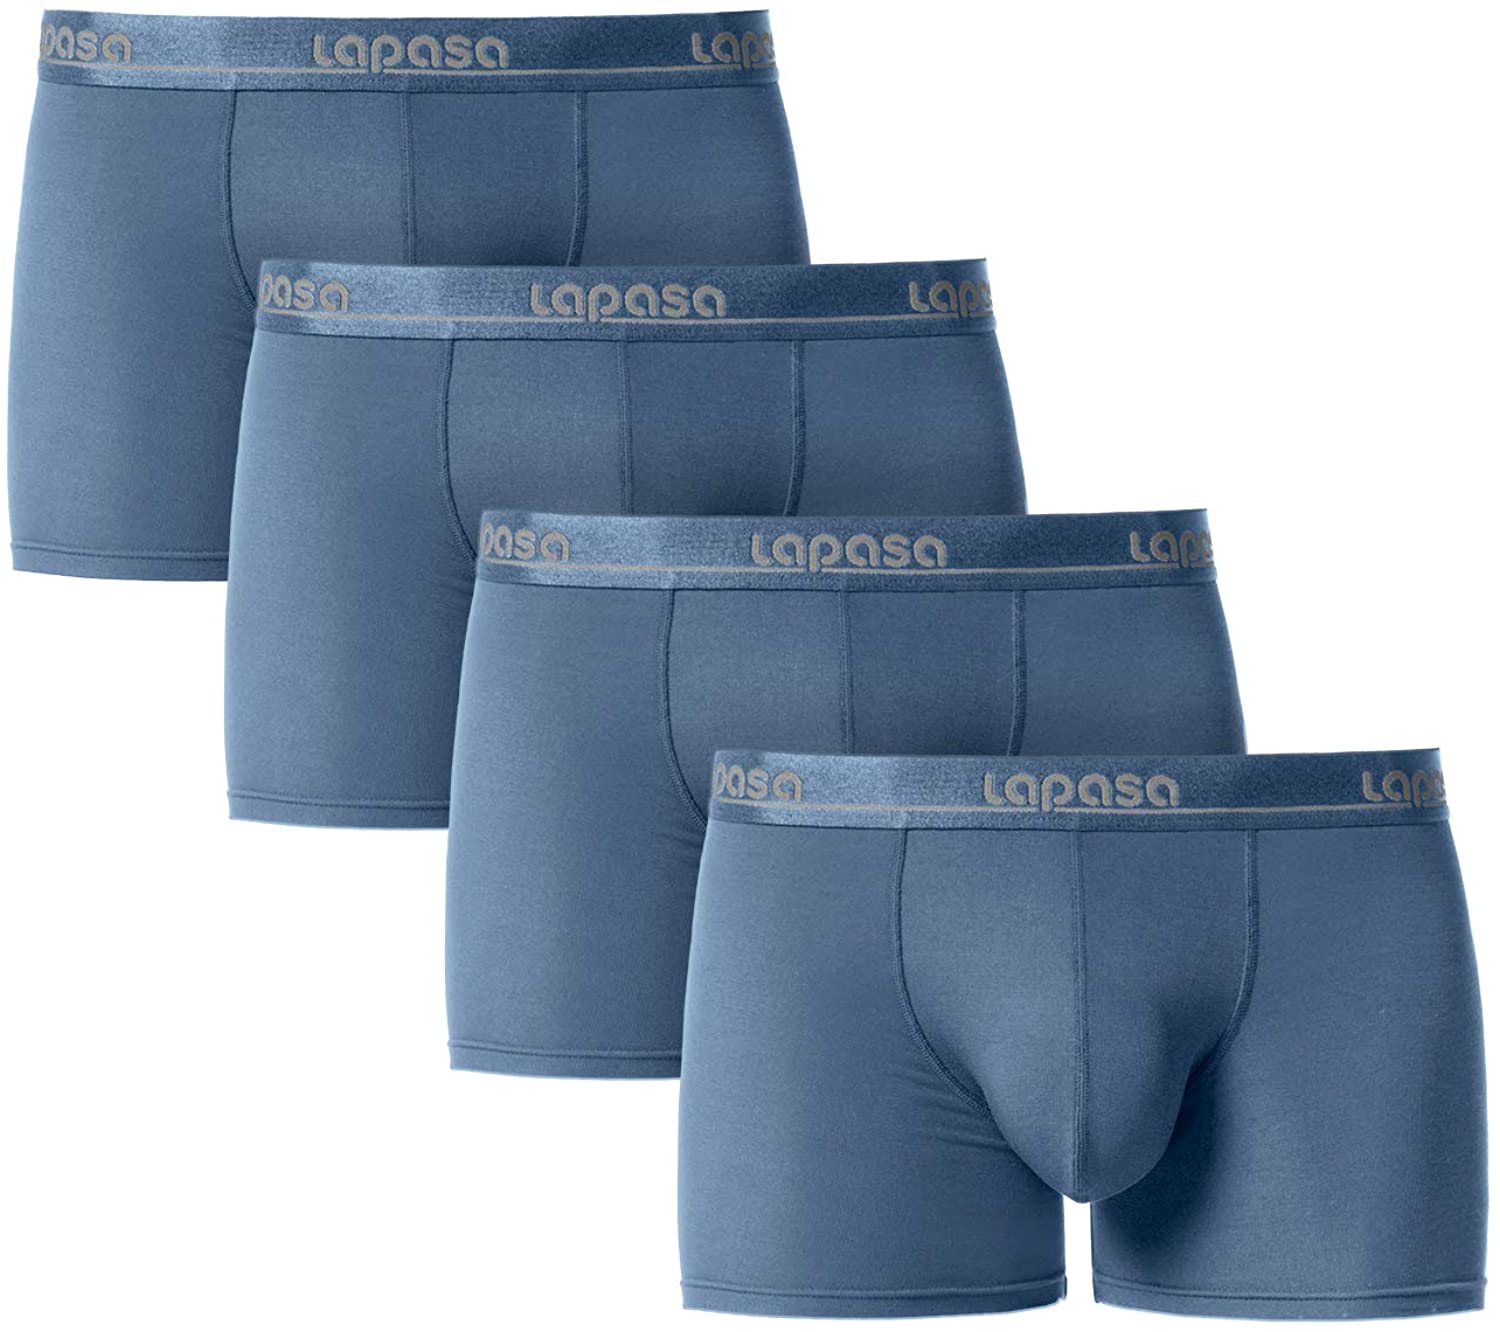 LAPASA Men's Boxer Briefs 3-Pack at  Men's Clothing store